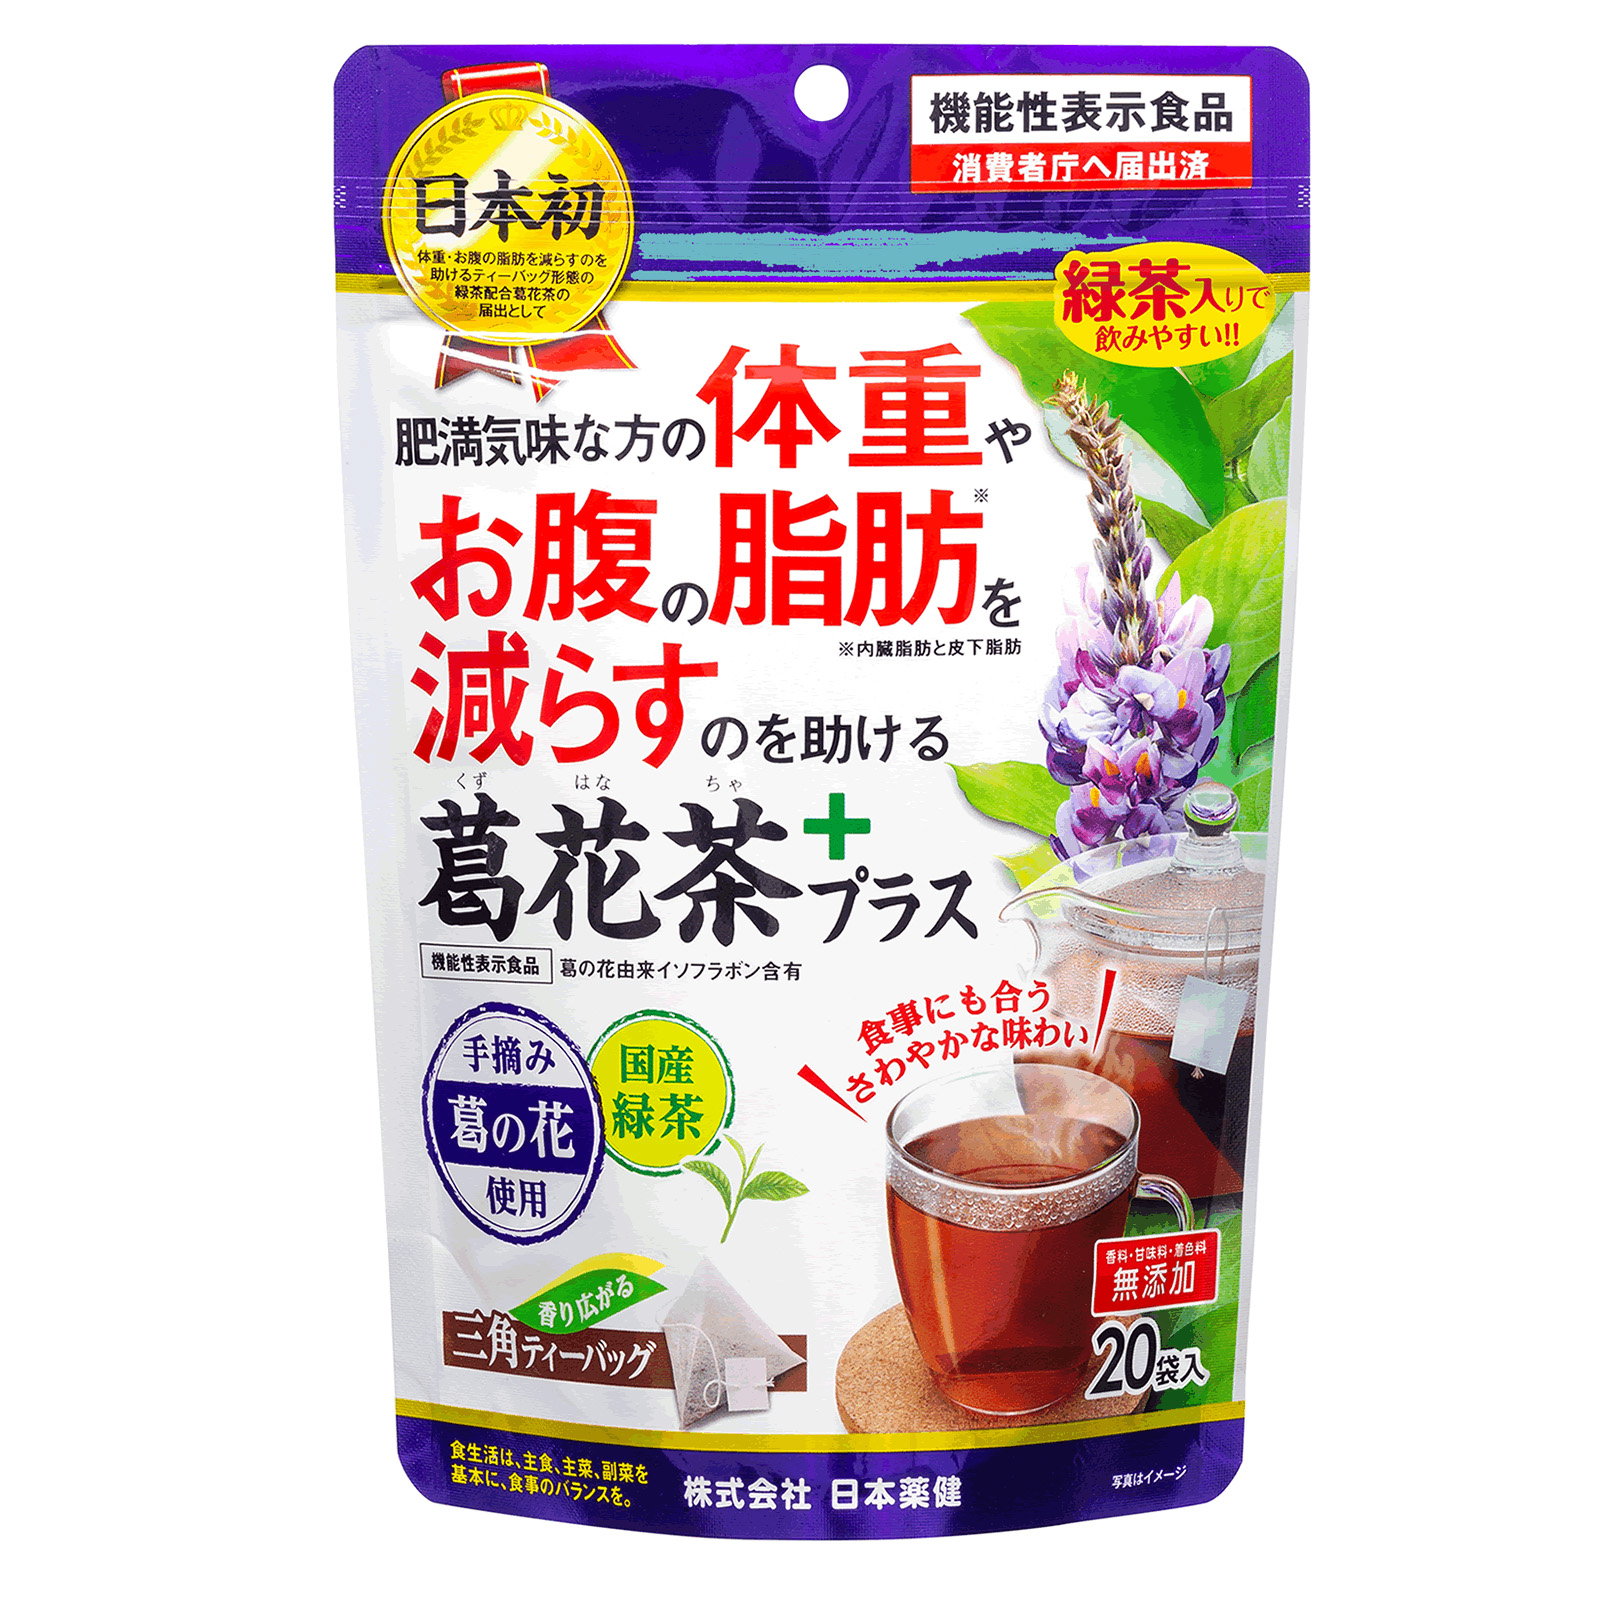 楽天市場 葛花茶プラス 34g 1 7g 袋 機能性表示食品 くずはな茶 かっか茶 ヘルスケア コヤマ